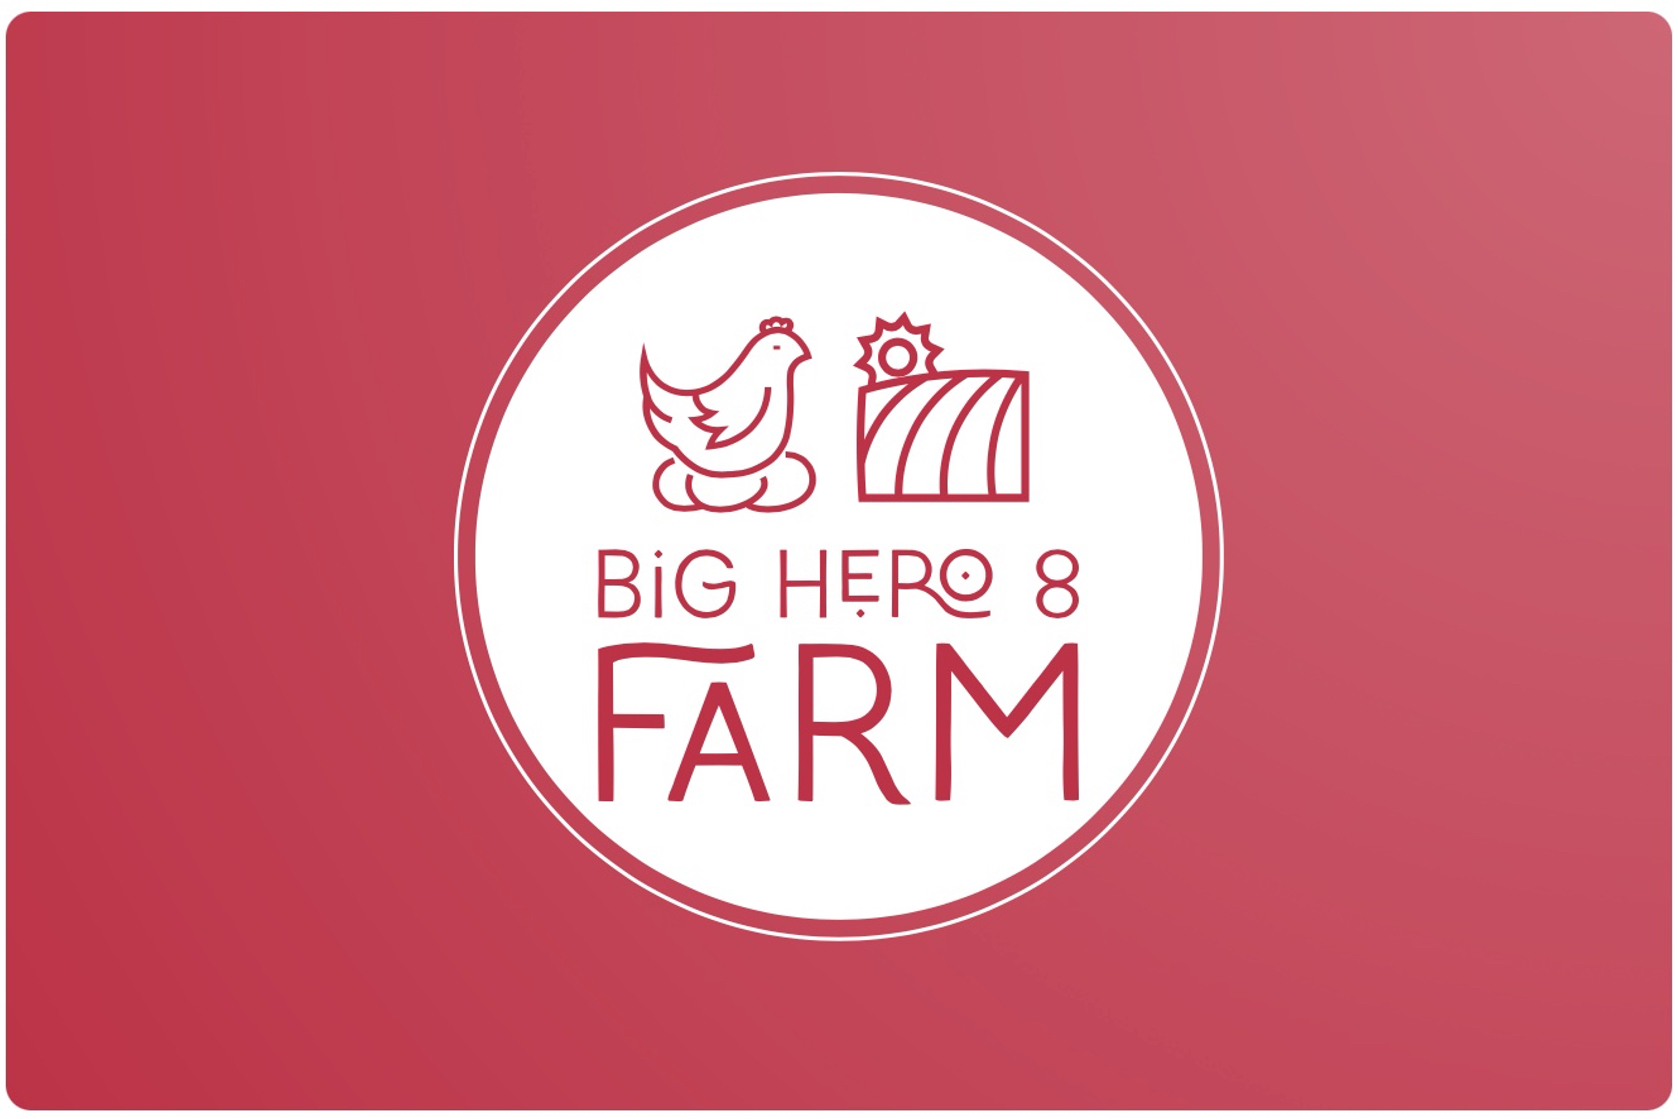 Big Hero 8 Farm